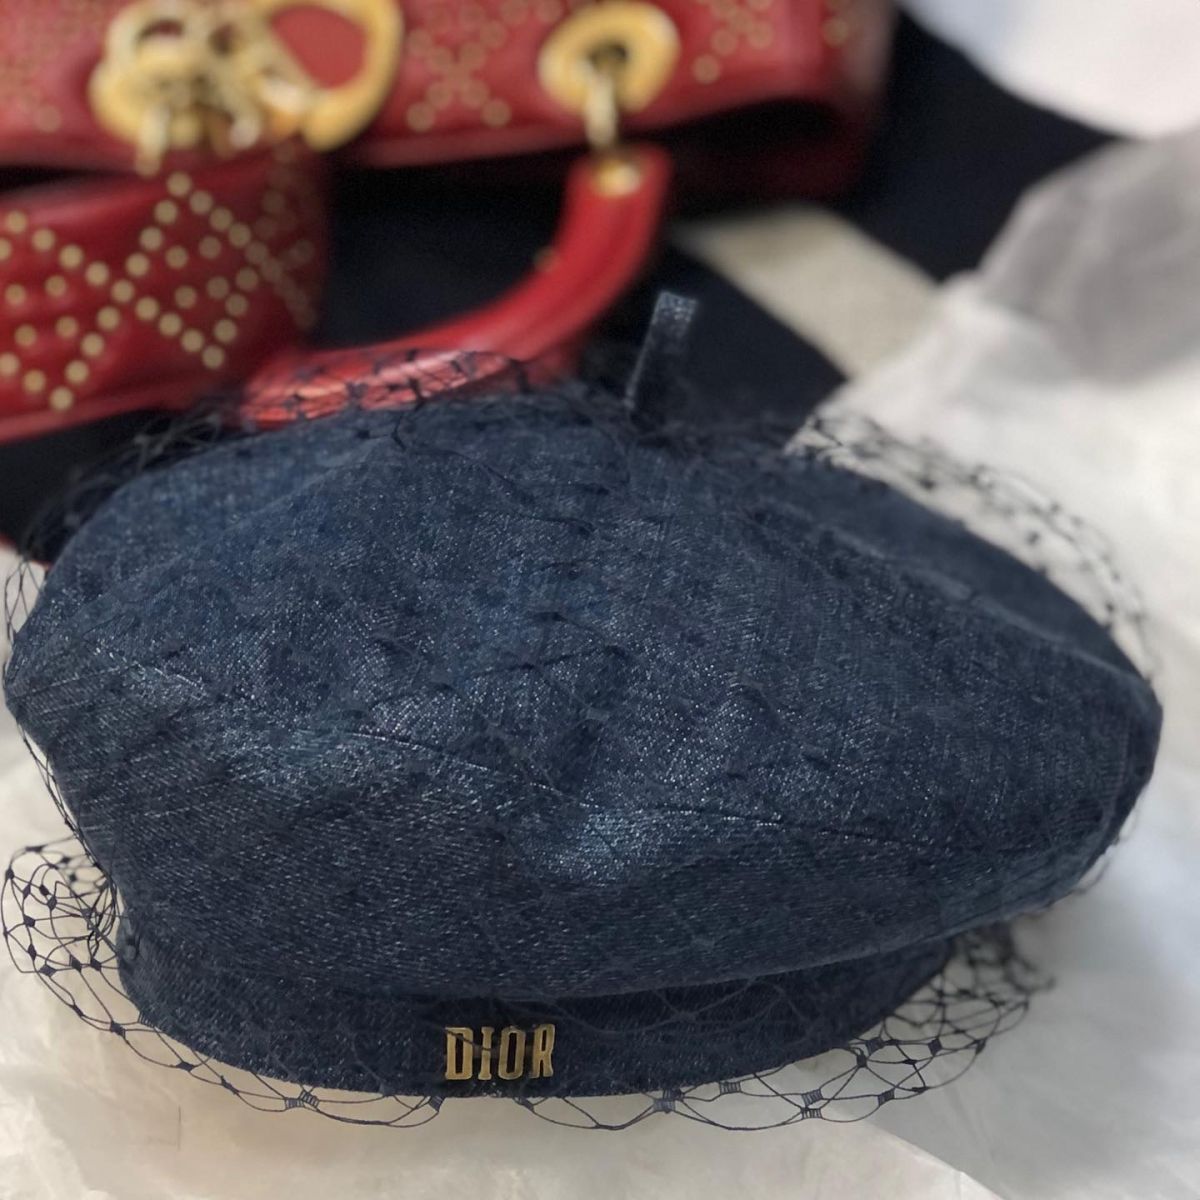 Берет джинсовый Christian Dior  размер 57 цена 23 078 руб 